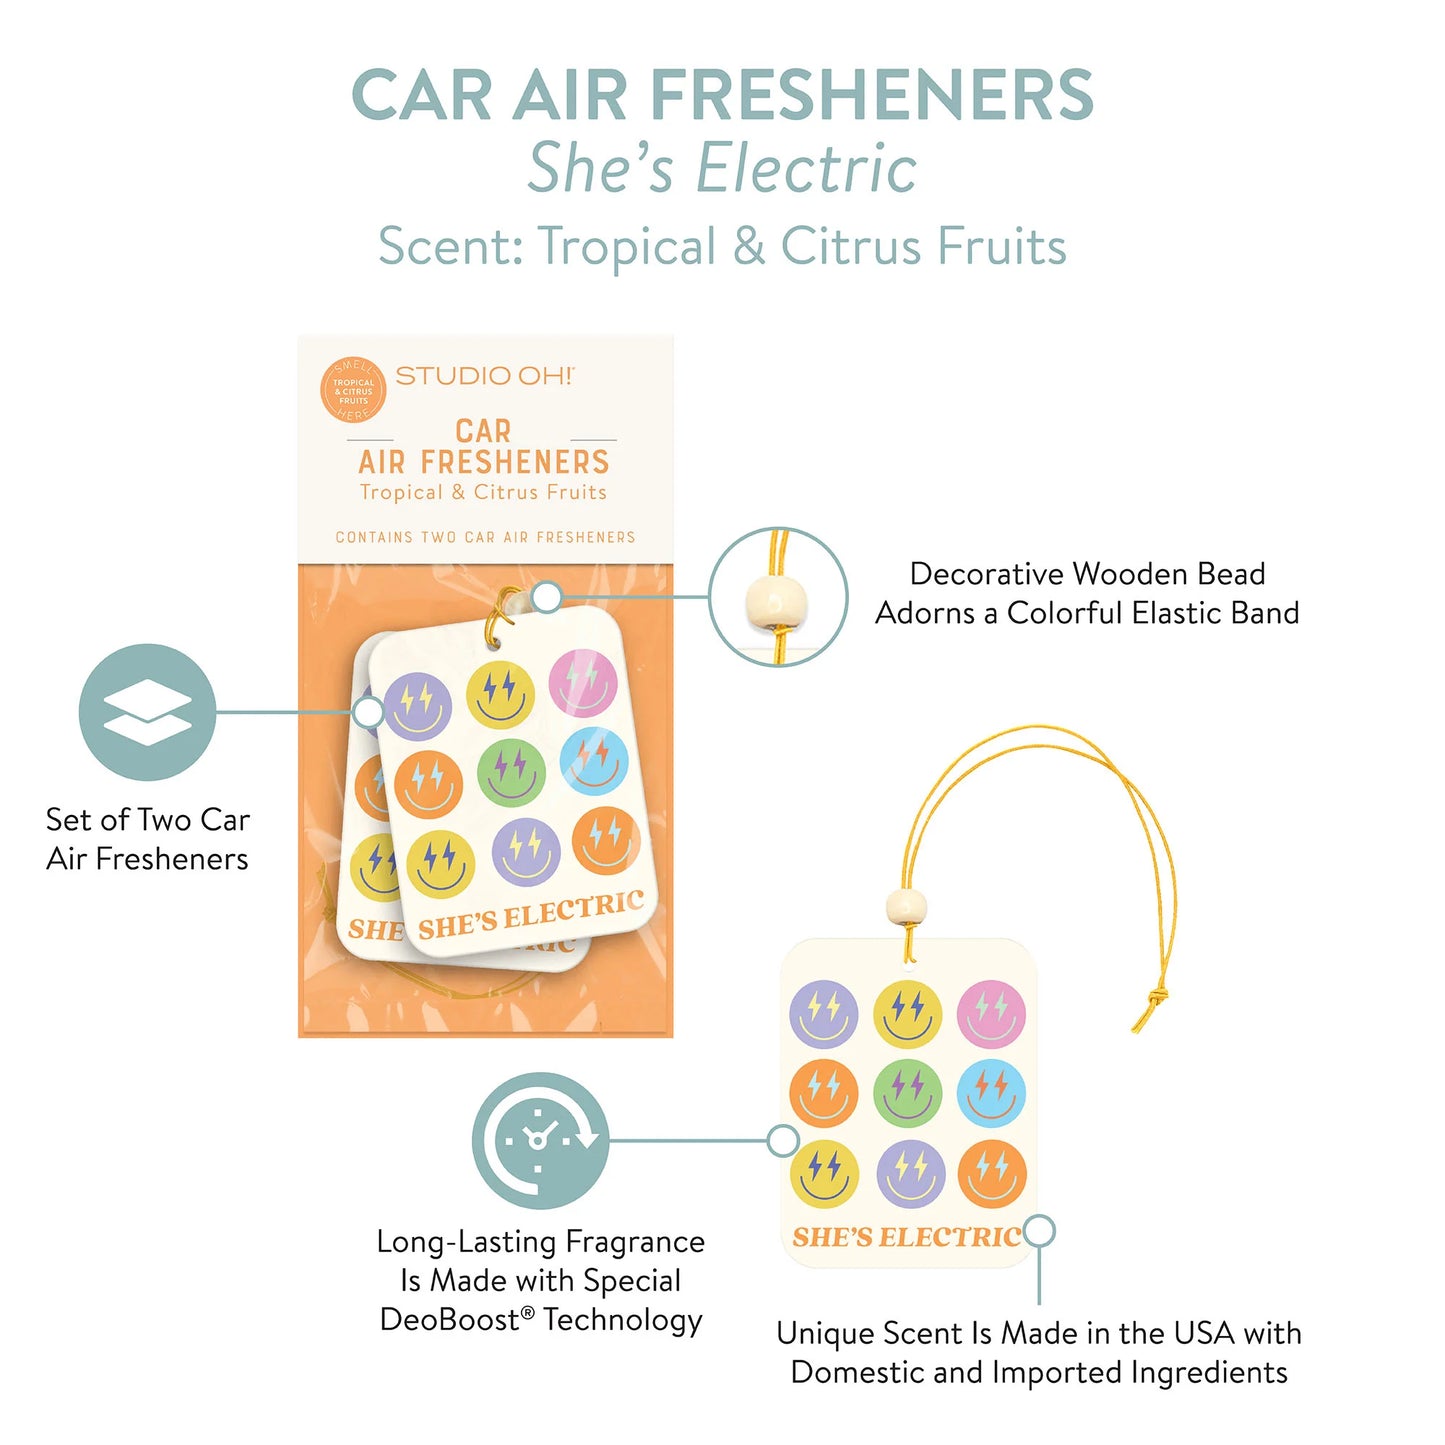 Car Air Fresheners - She’s Electric